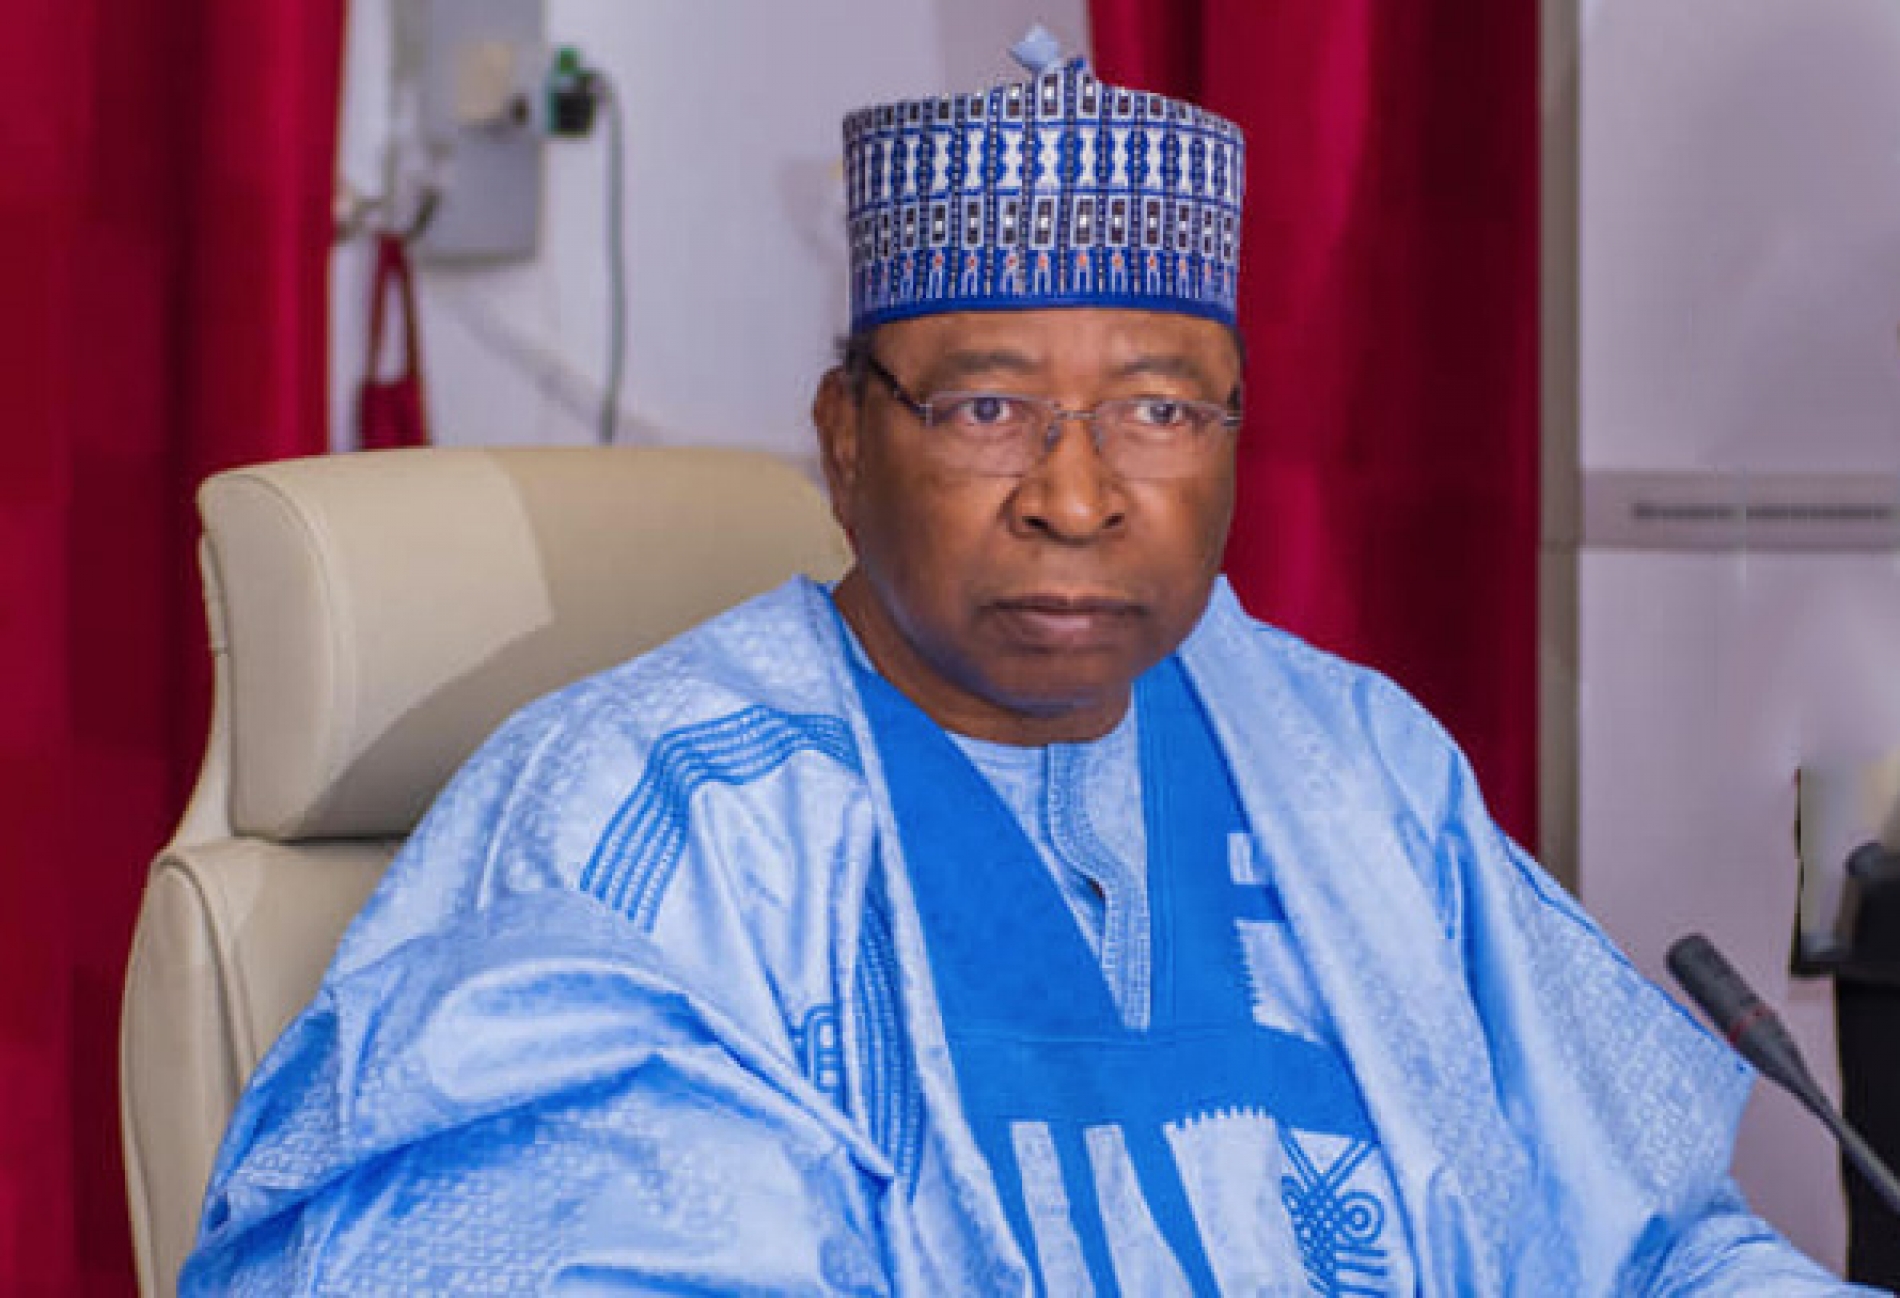 Indiscrétions : La succession du PM Ouhoumoudou Mahamadou est-elle ouverte ?